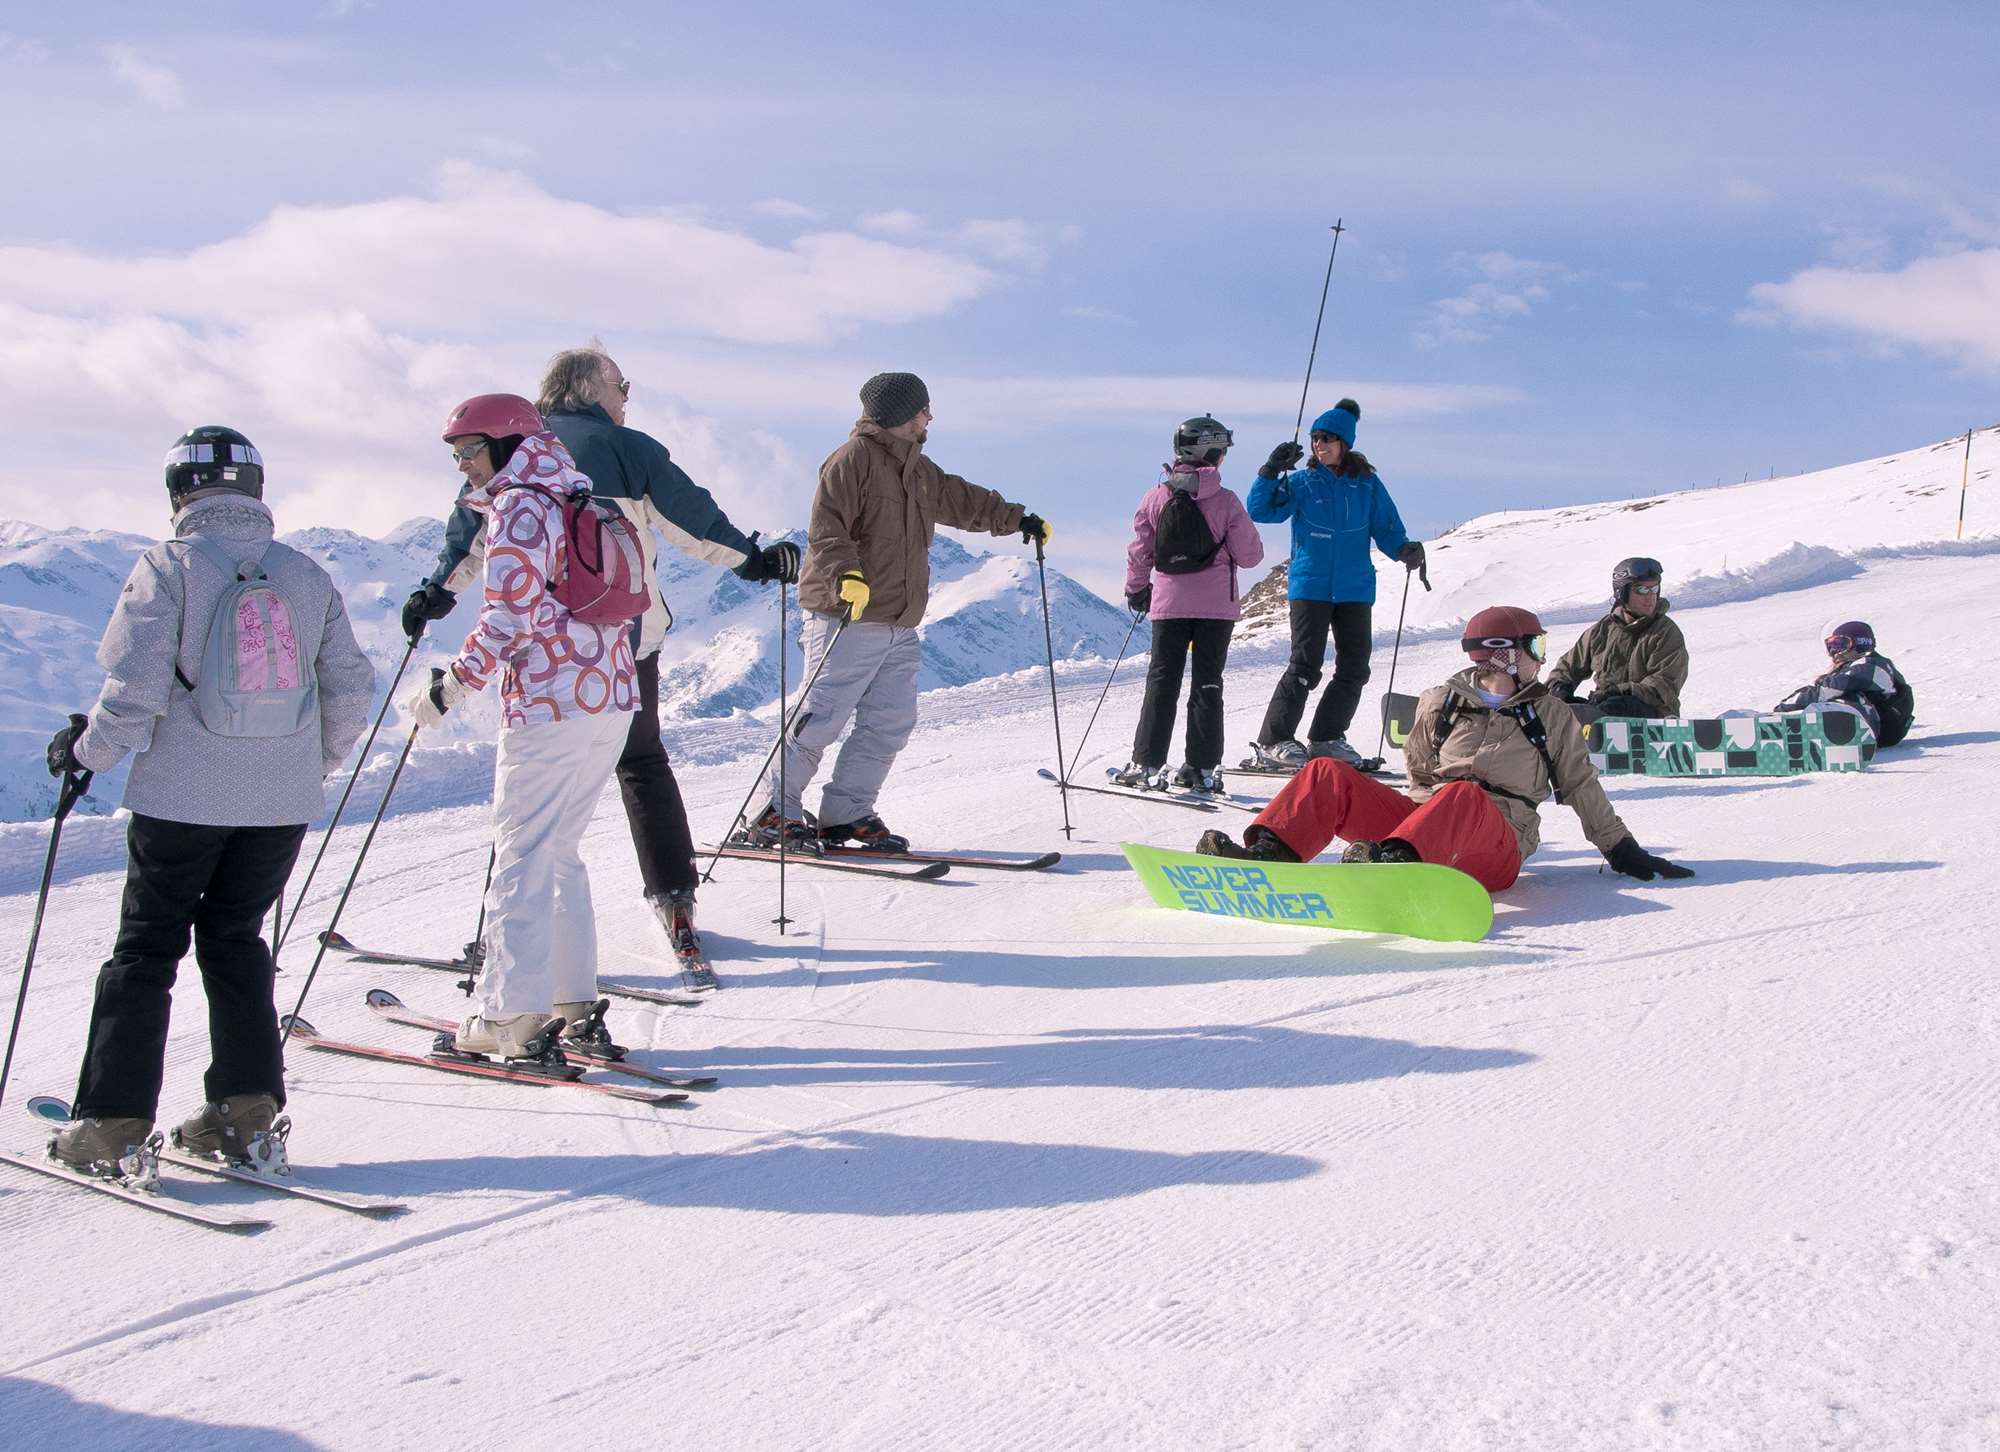 Ski hosting in Bad Gastein